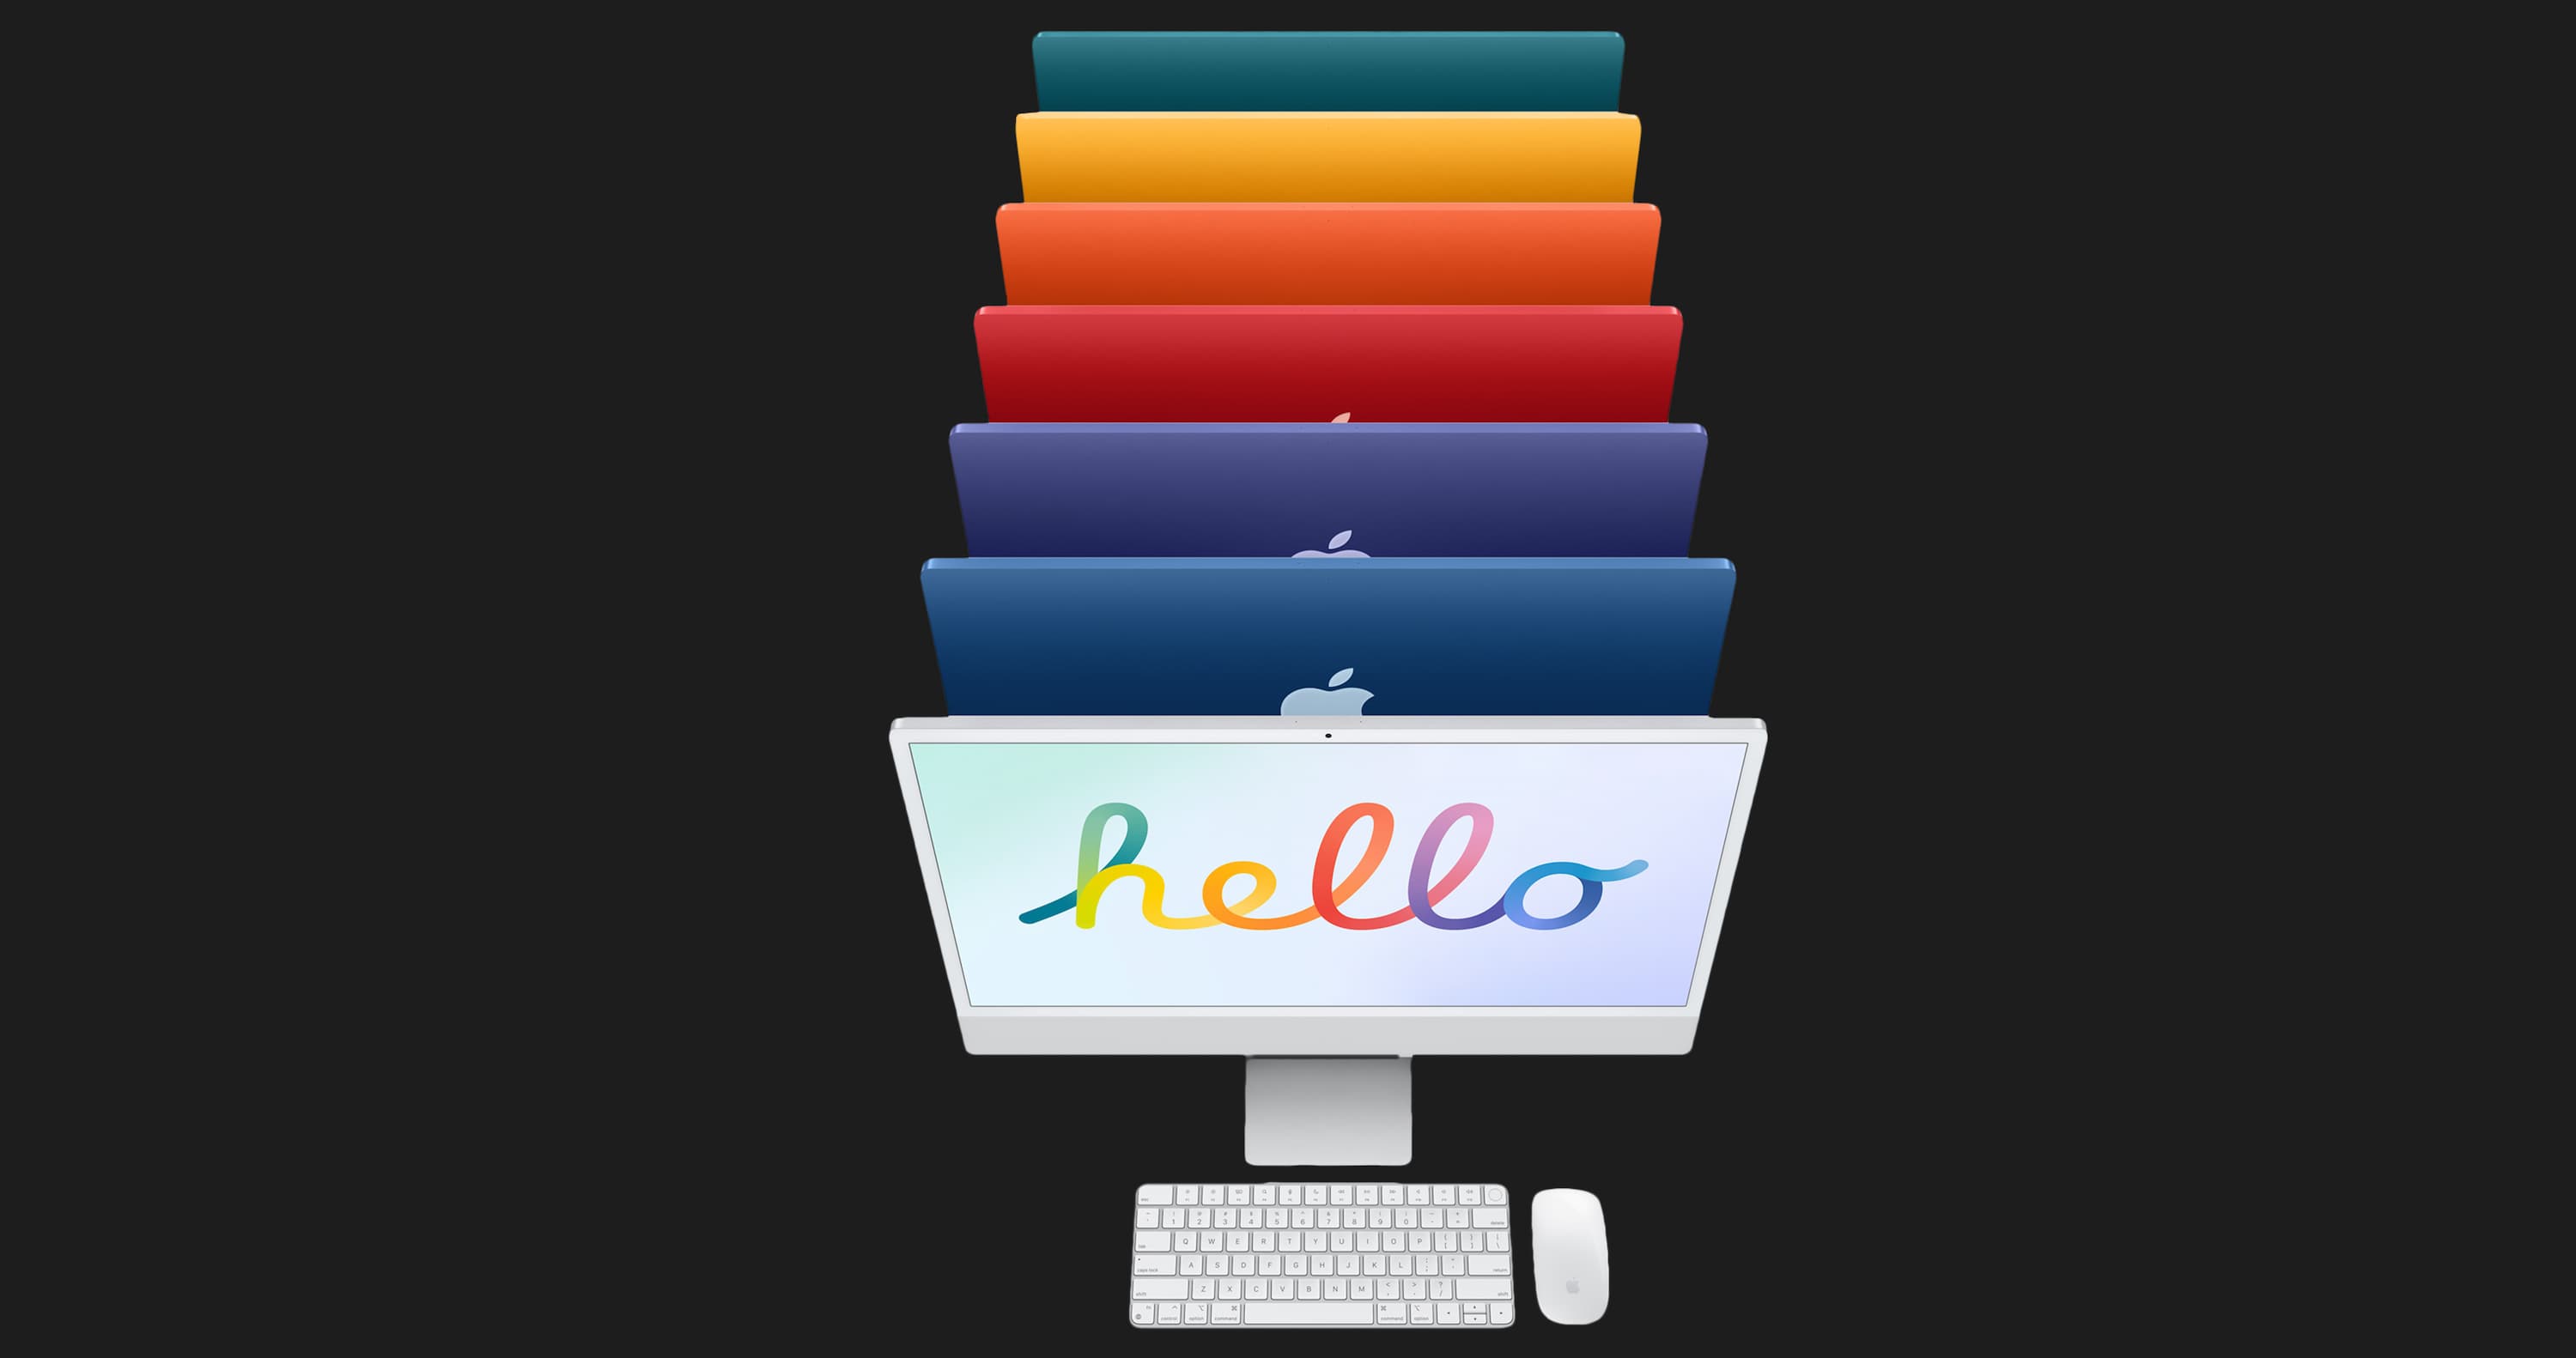 Apple iMac 24 with Retina 4.5K, 256GB, 8 CPU / 8 GPU (Orange) (Z132)